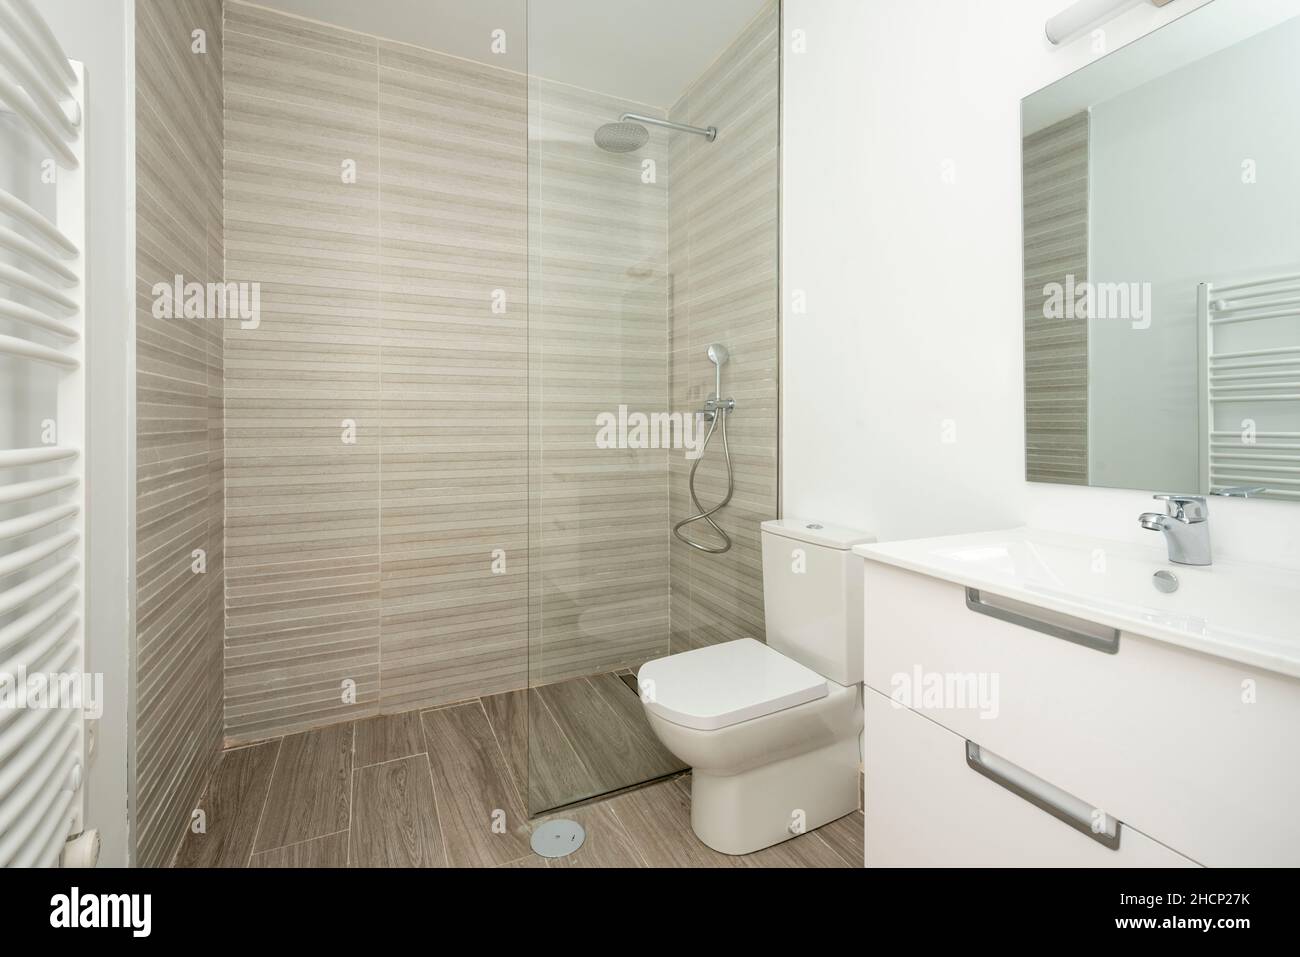 inodoro blanco con pisos de baldosas de madera, espejo de radiador montado en la pared y una amplia ducha con techo de cristal Foto de stock